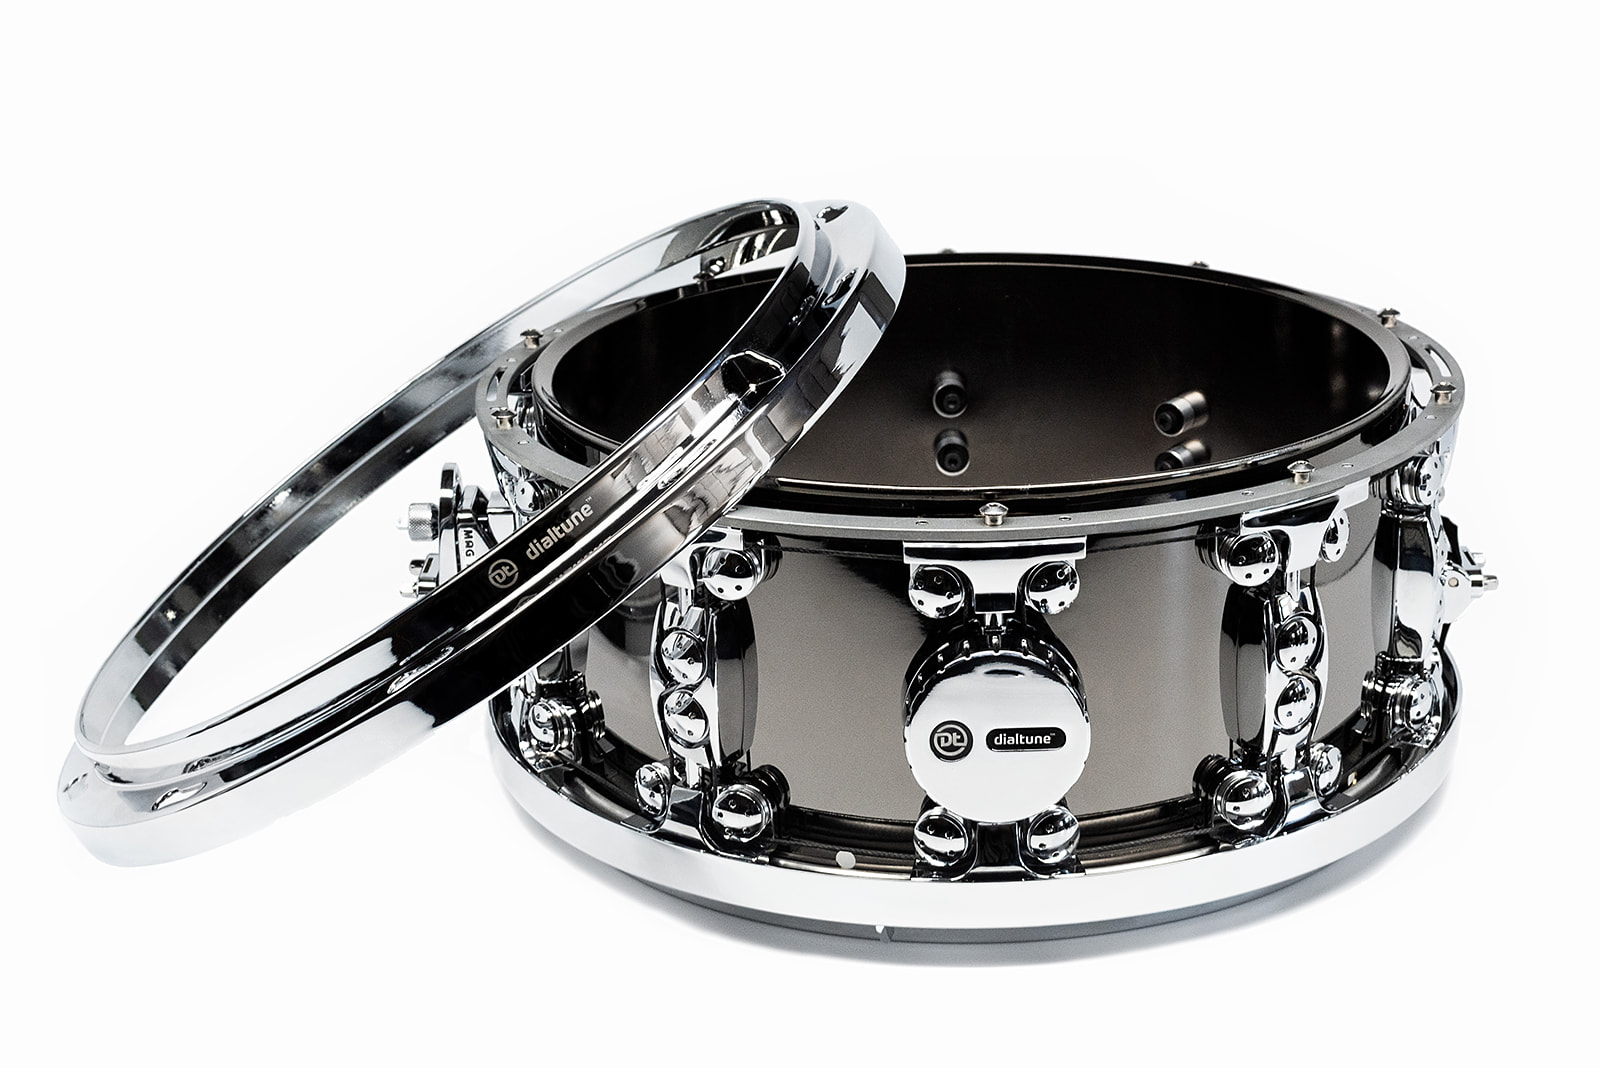 dialtune black nickel brass 6.5x14" snare drum